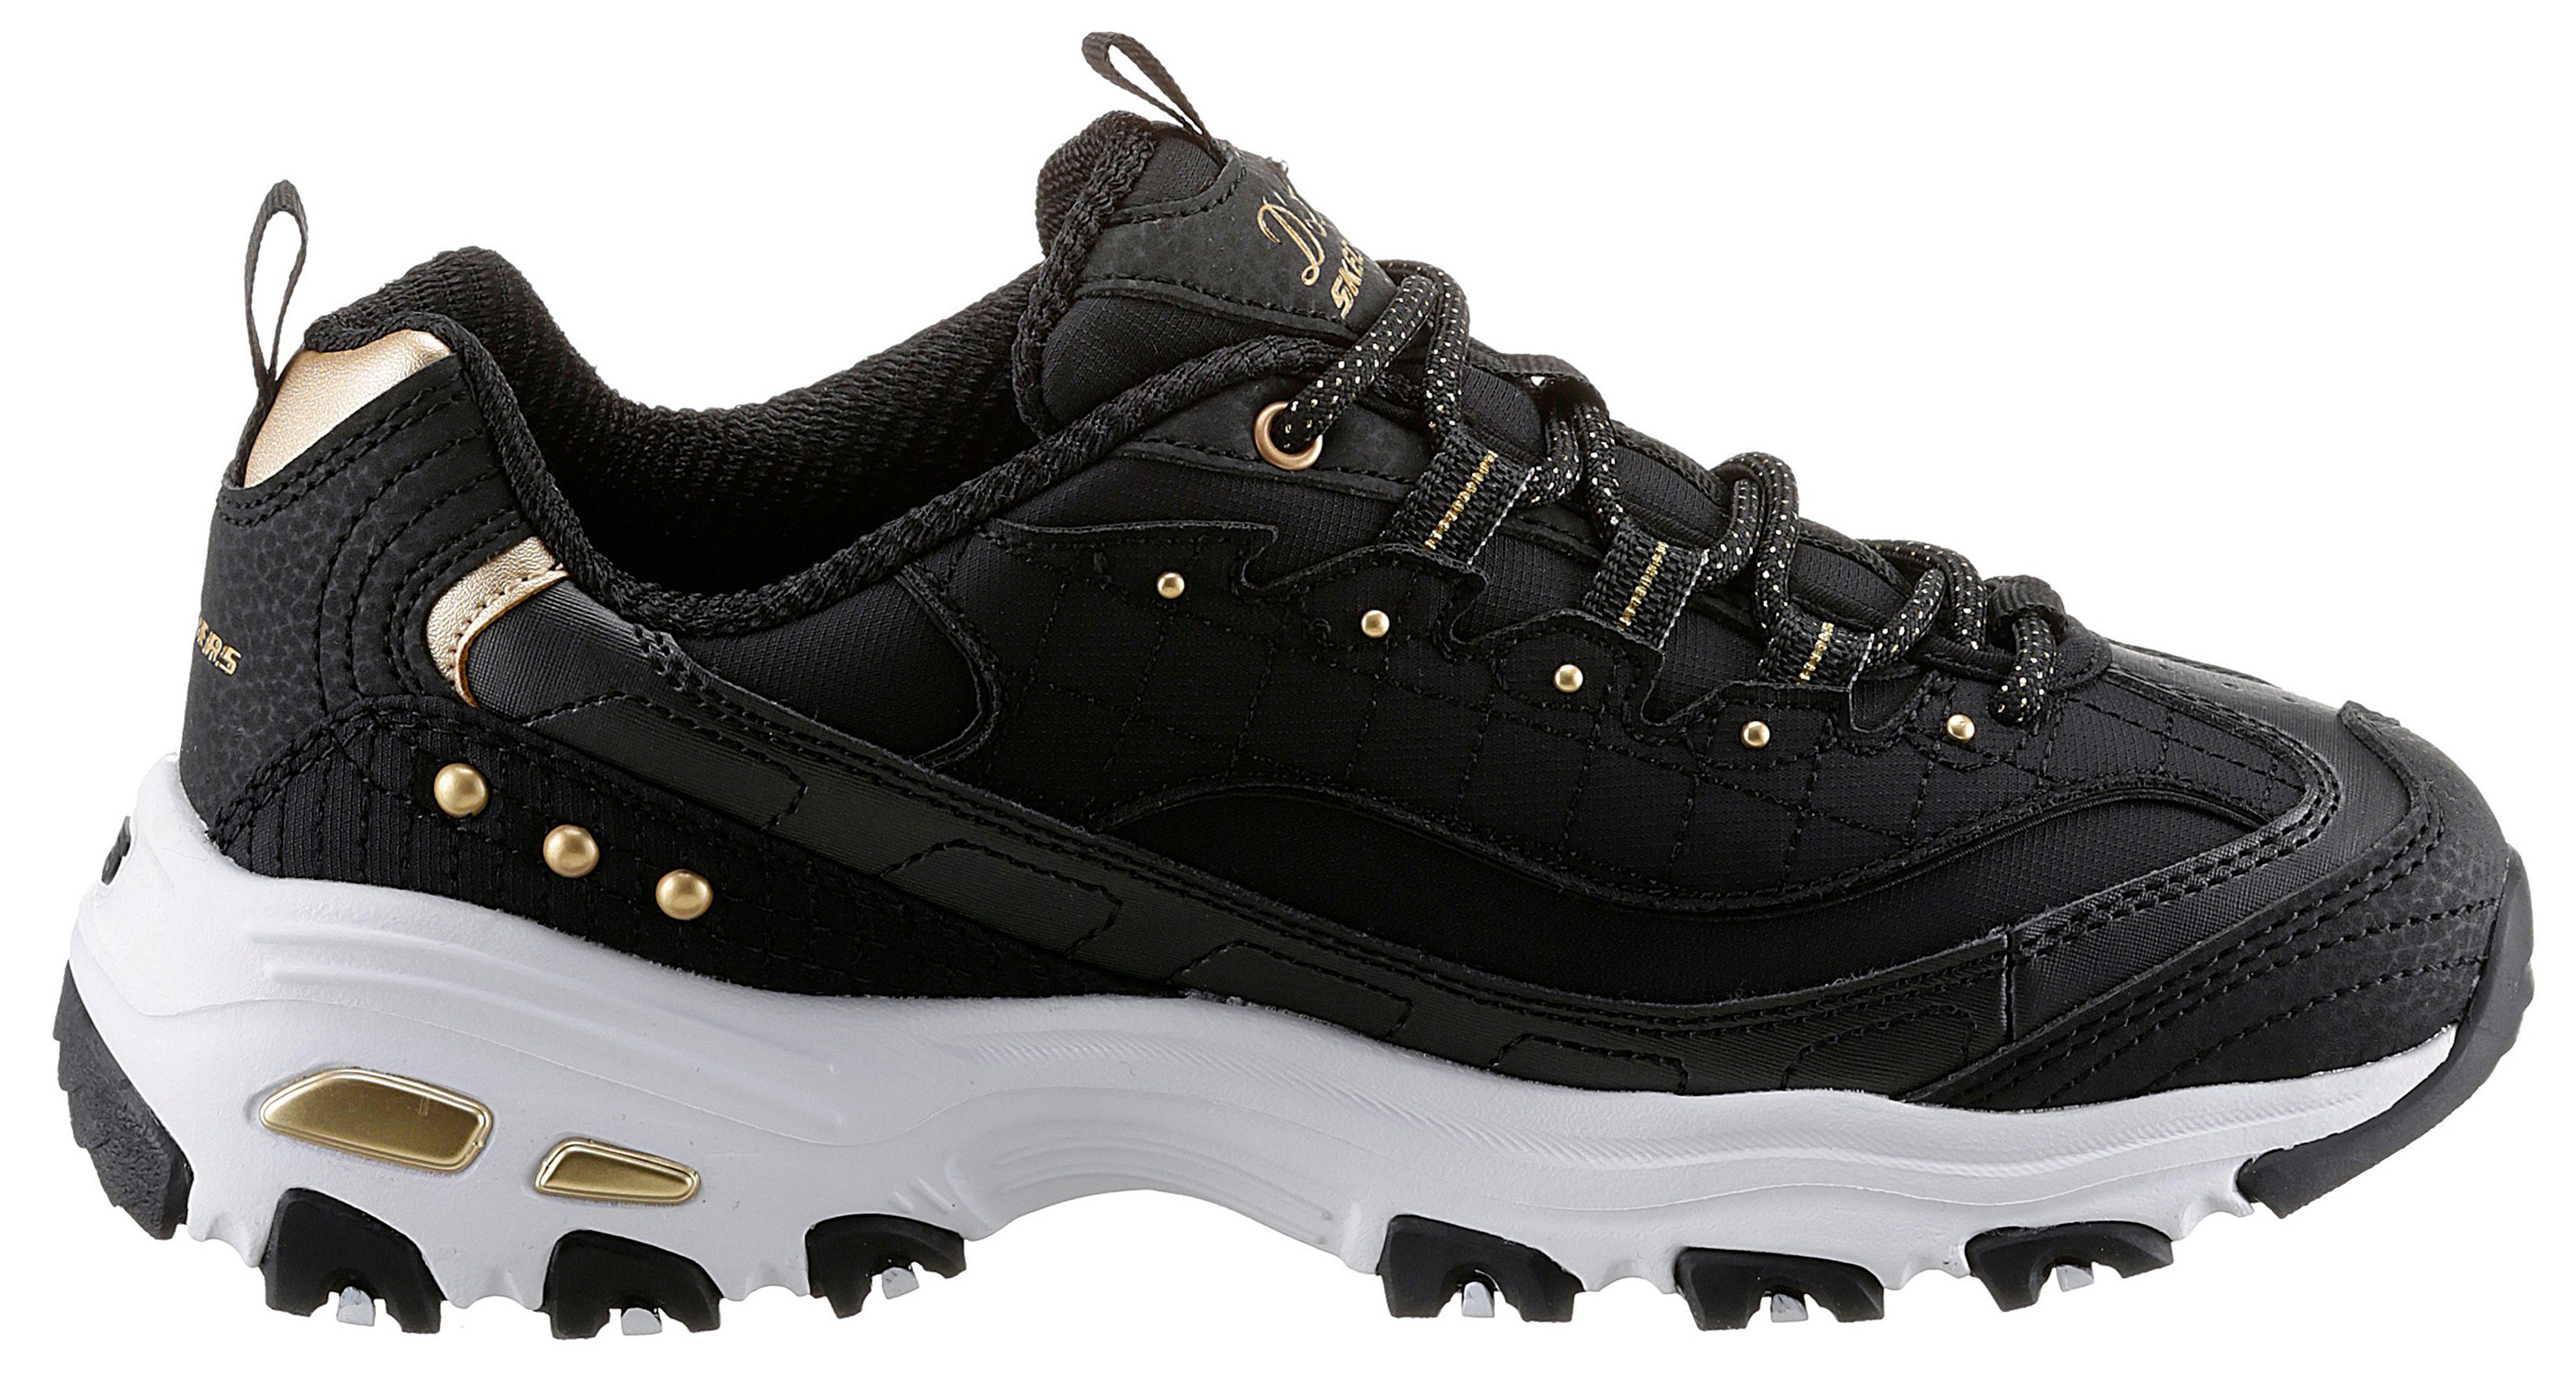 Skechers Sneaker mit Metallic-Details schwarz-goldfarben schönen D'LITES